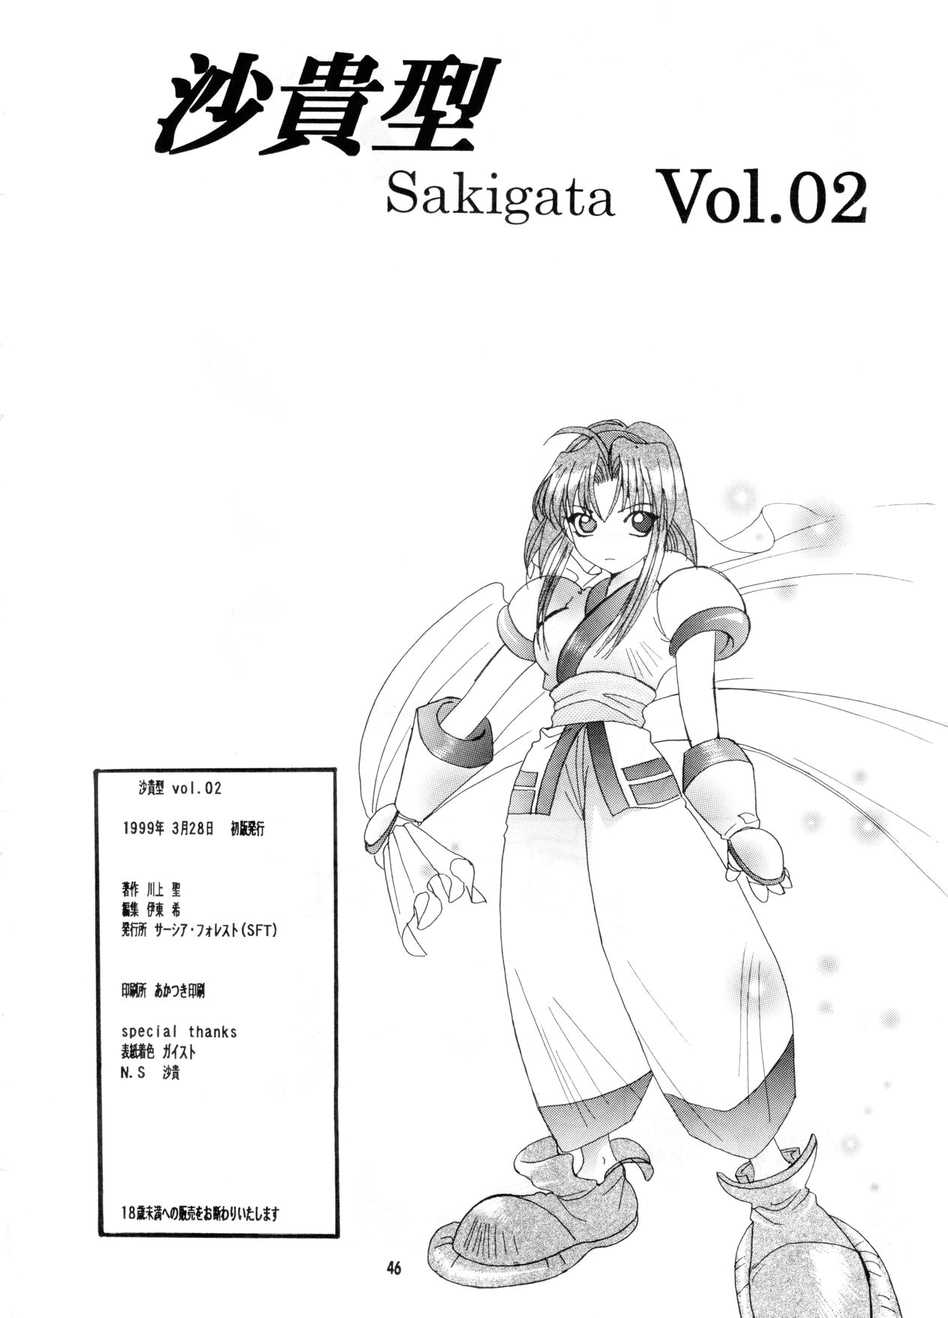 [SFT (Kawakami Takashi)] Sakigata Vol.02 (Samurai Spirits) [サーシア・フォレスト (川上聖)] 沙貴型 Vol.02 (サムライスピリッツ アスラ斬魔伝)